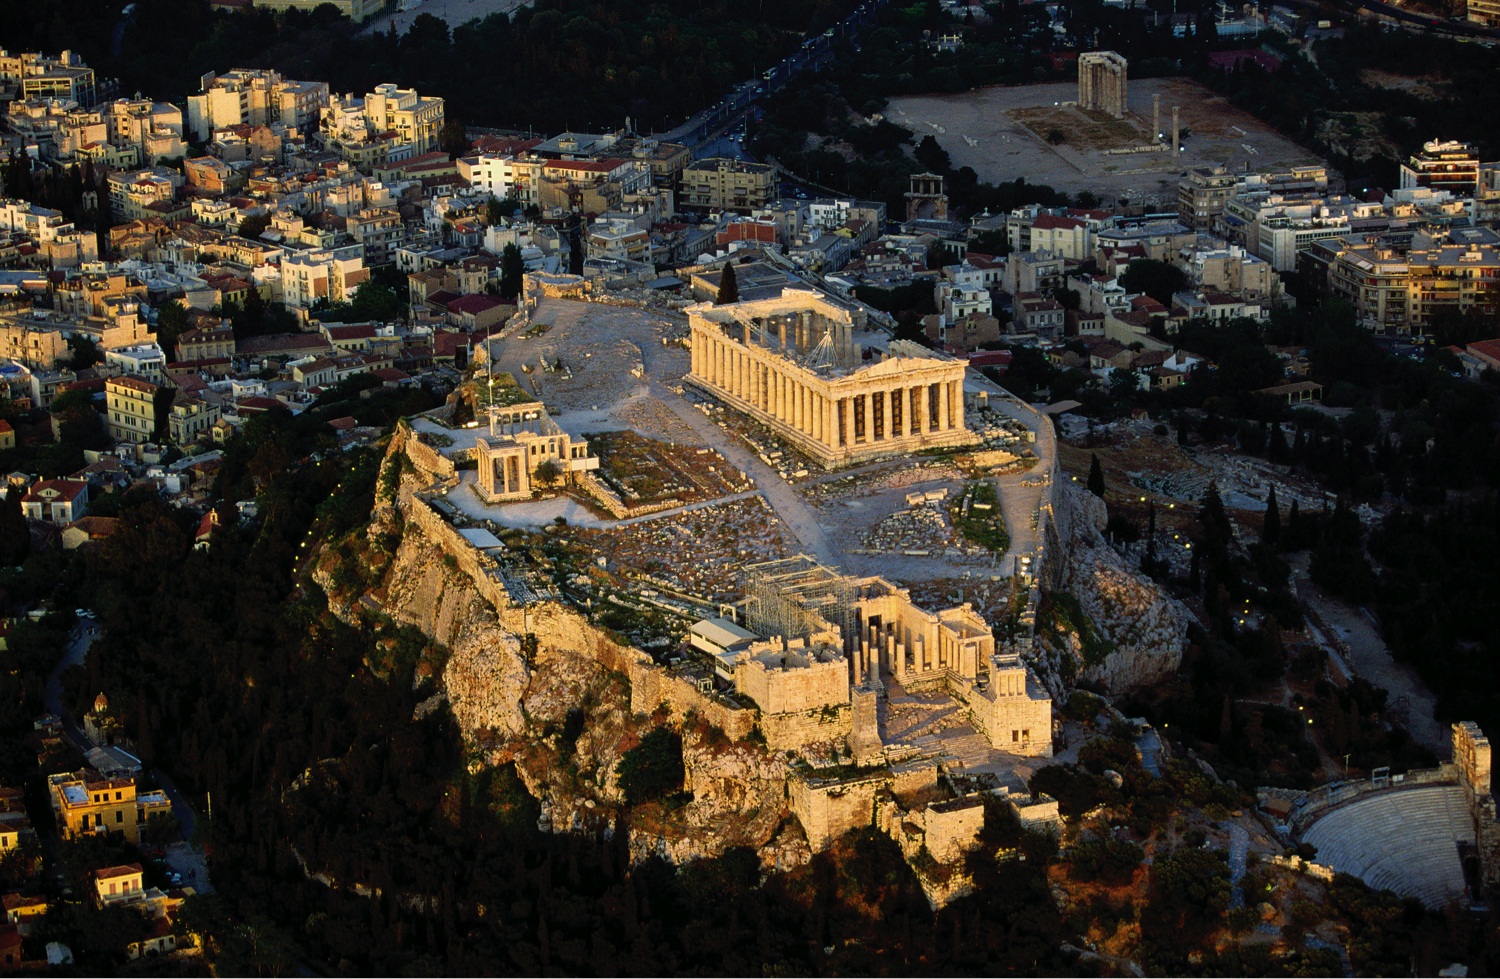 visit acropolis at night